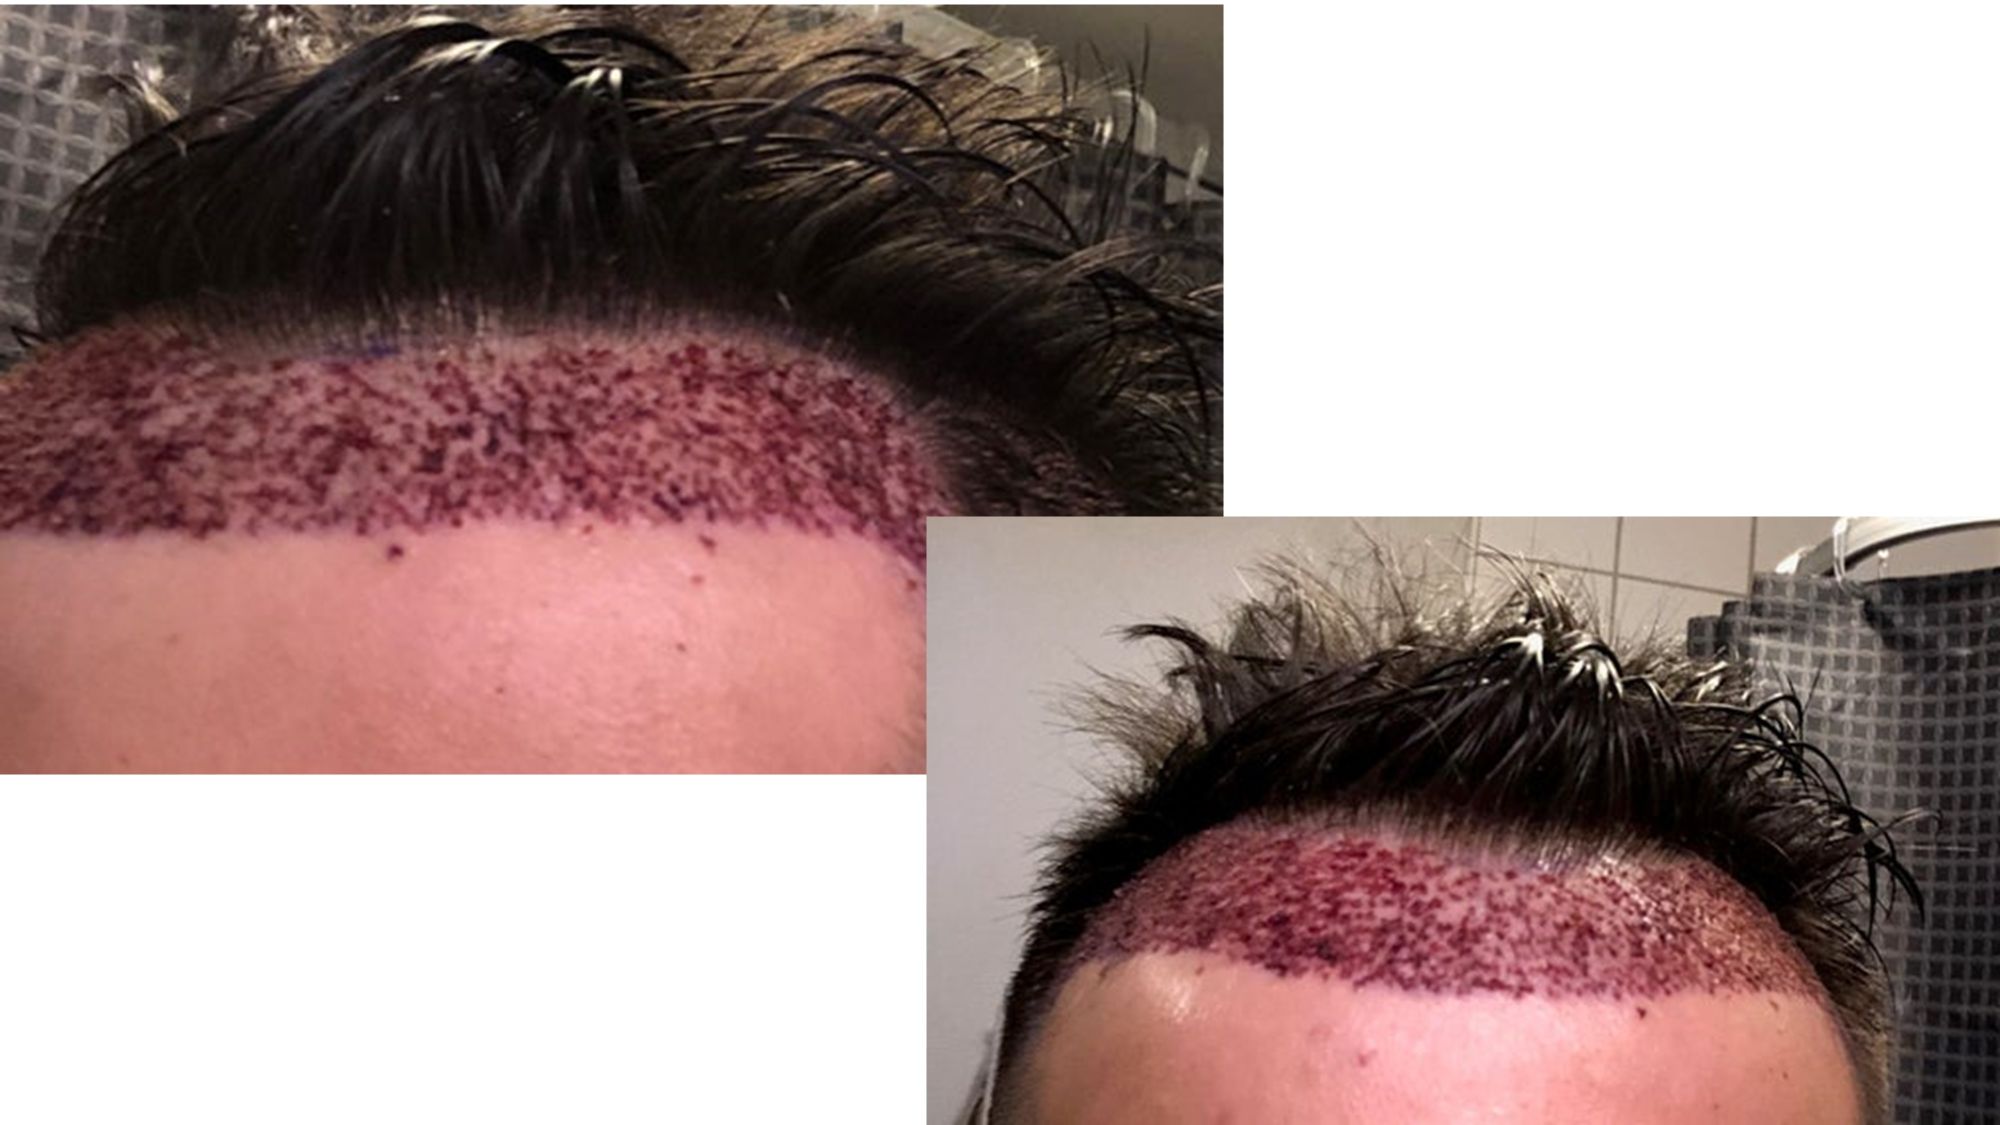 Tôi vừa phẫu thuật 6 ngày trước, mật độ tóc như thế này có ổn không, hay là 12 tháng nữa tôi lại phải cấy thêm tóc?